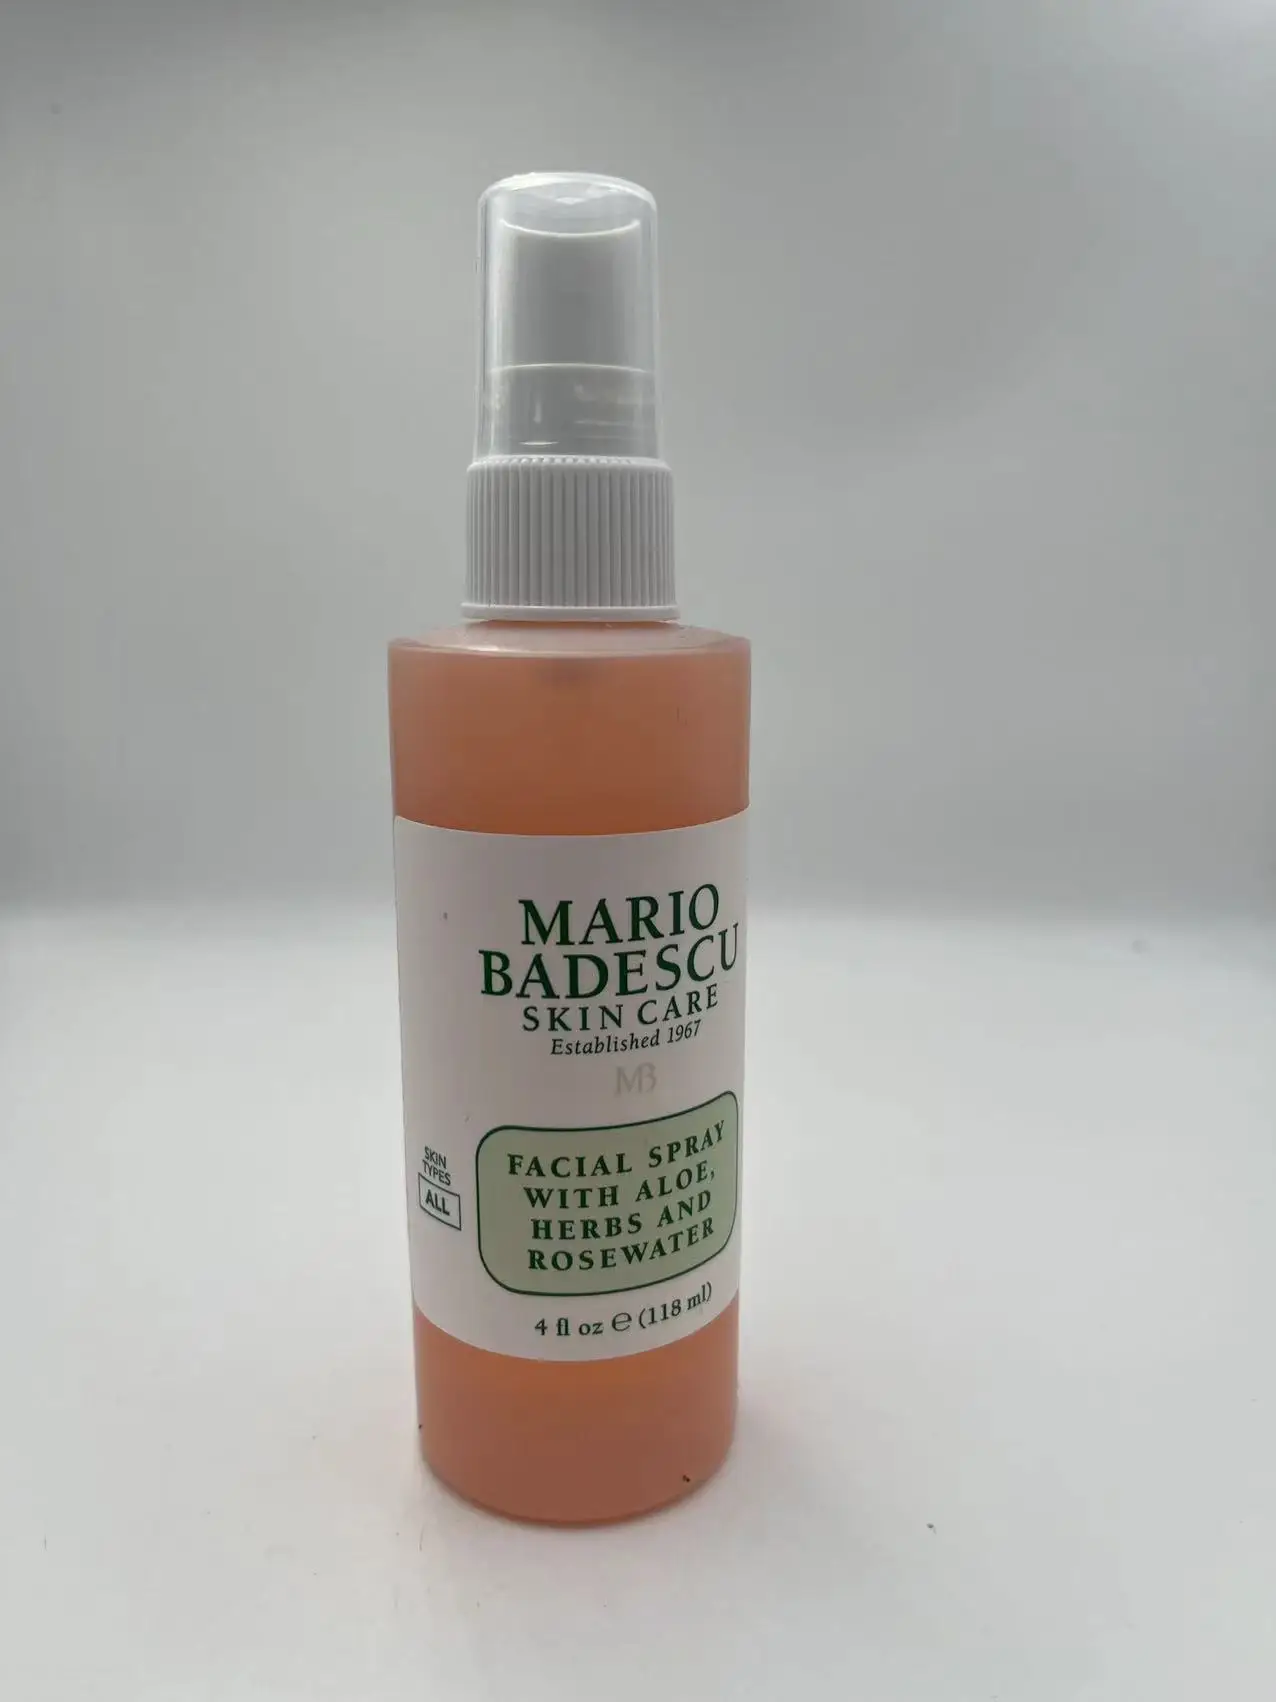 

Mario Badescu Facial Spray with Aloe Herbs and Rosewater 4 oz